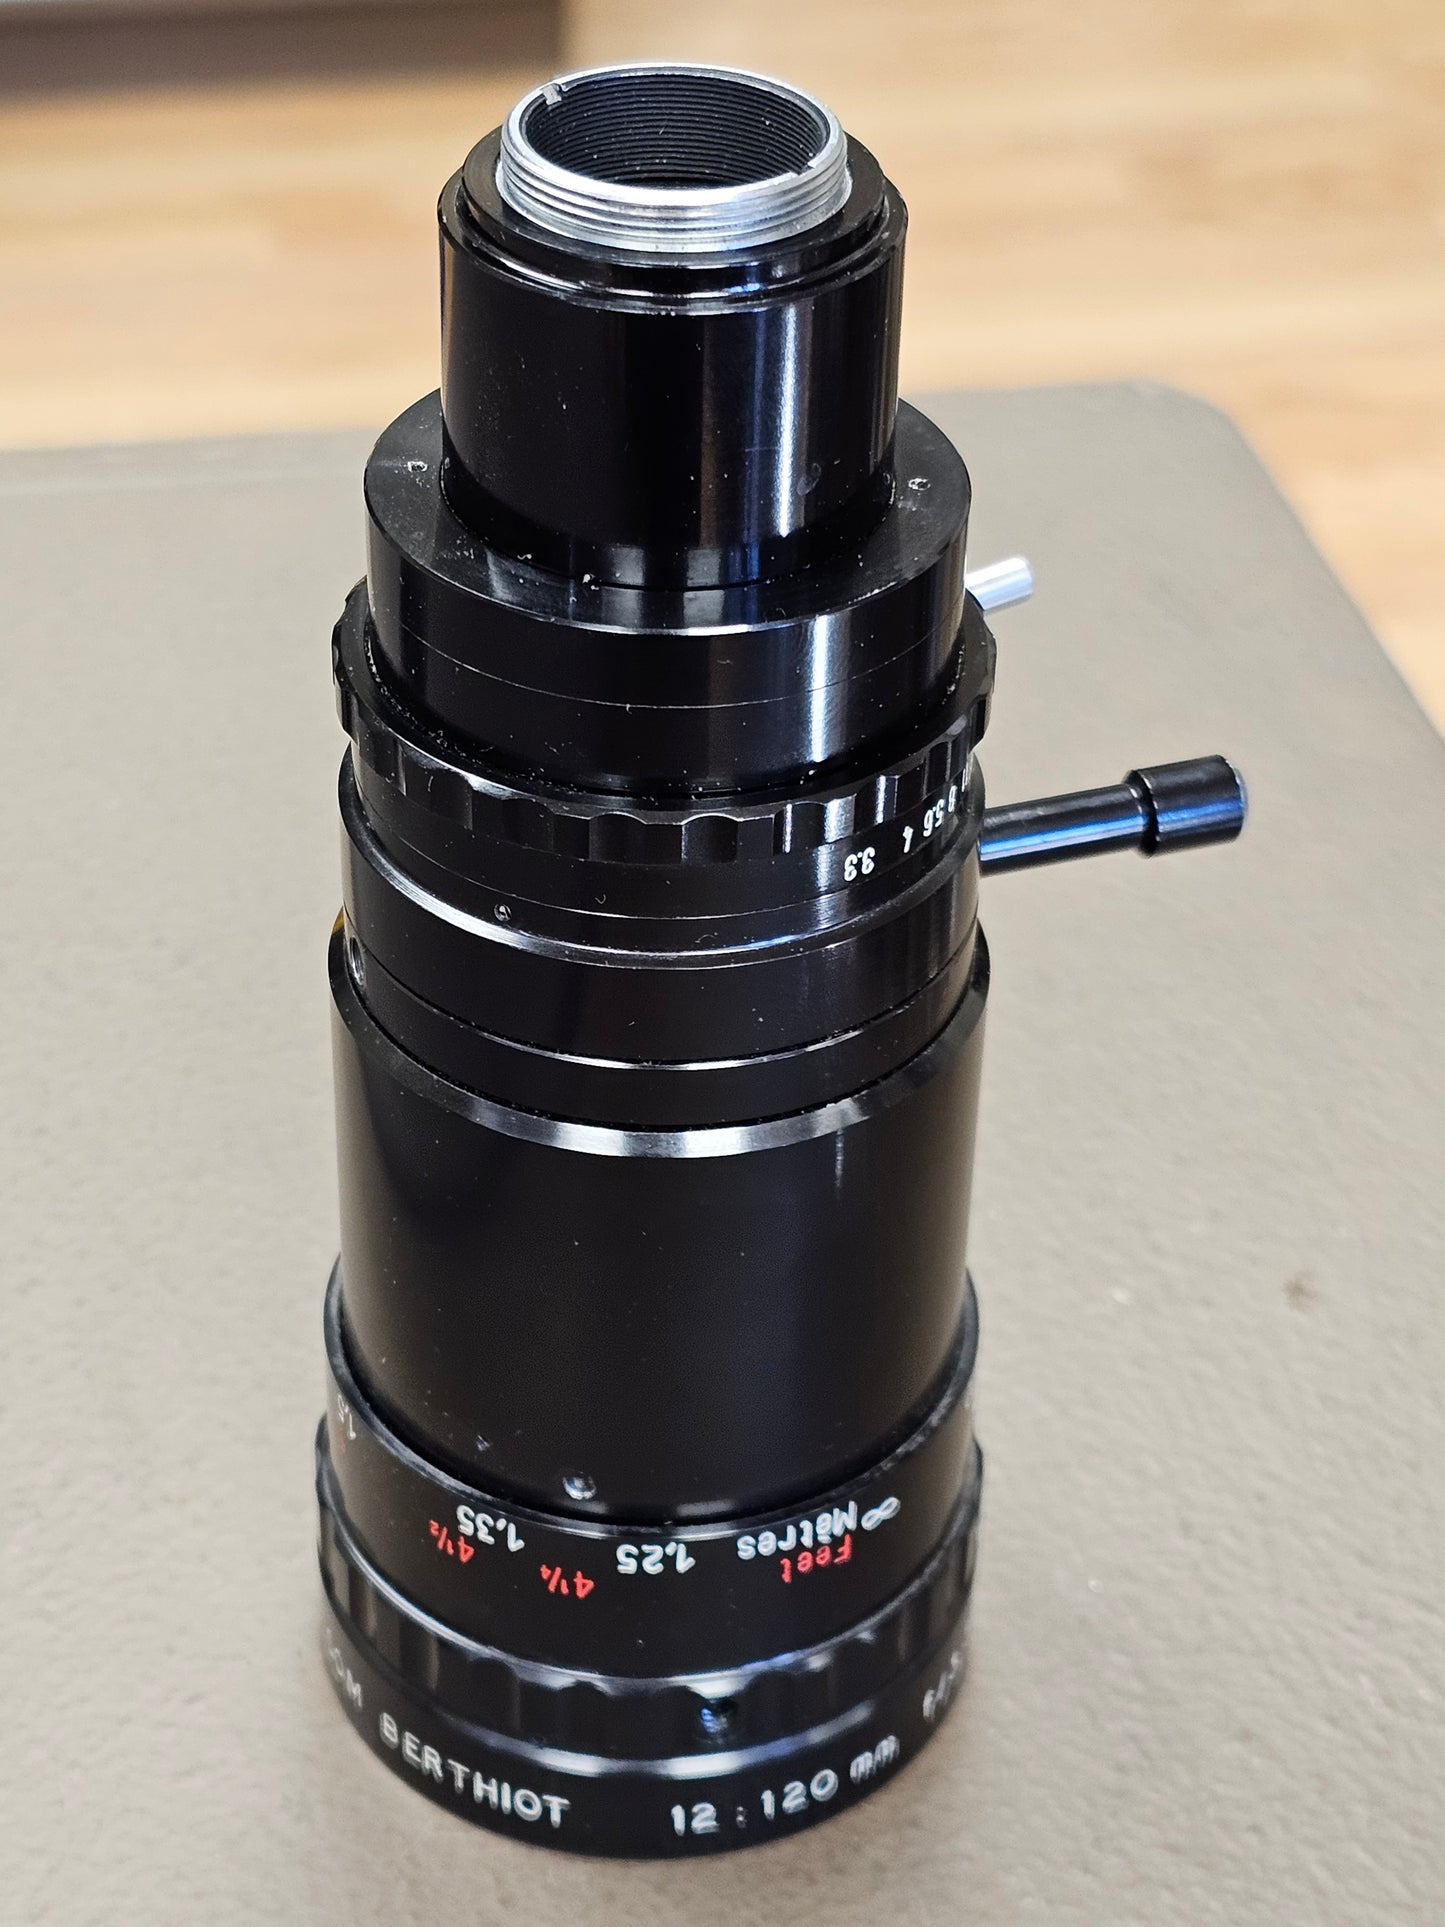 Som Berthiot Pan Cinor 12-120mm f3.3 C-Mount zoom lens S# T59308